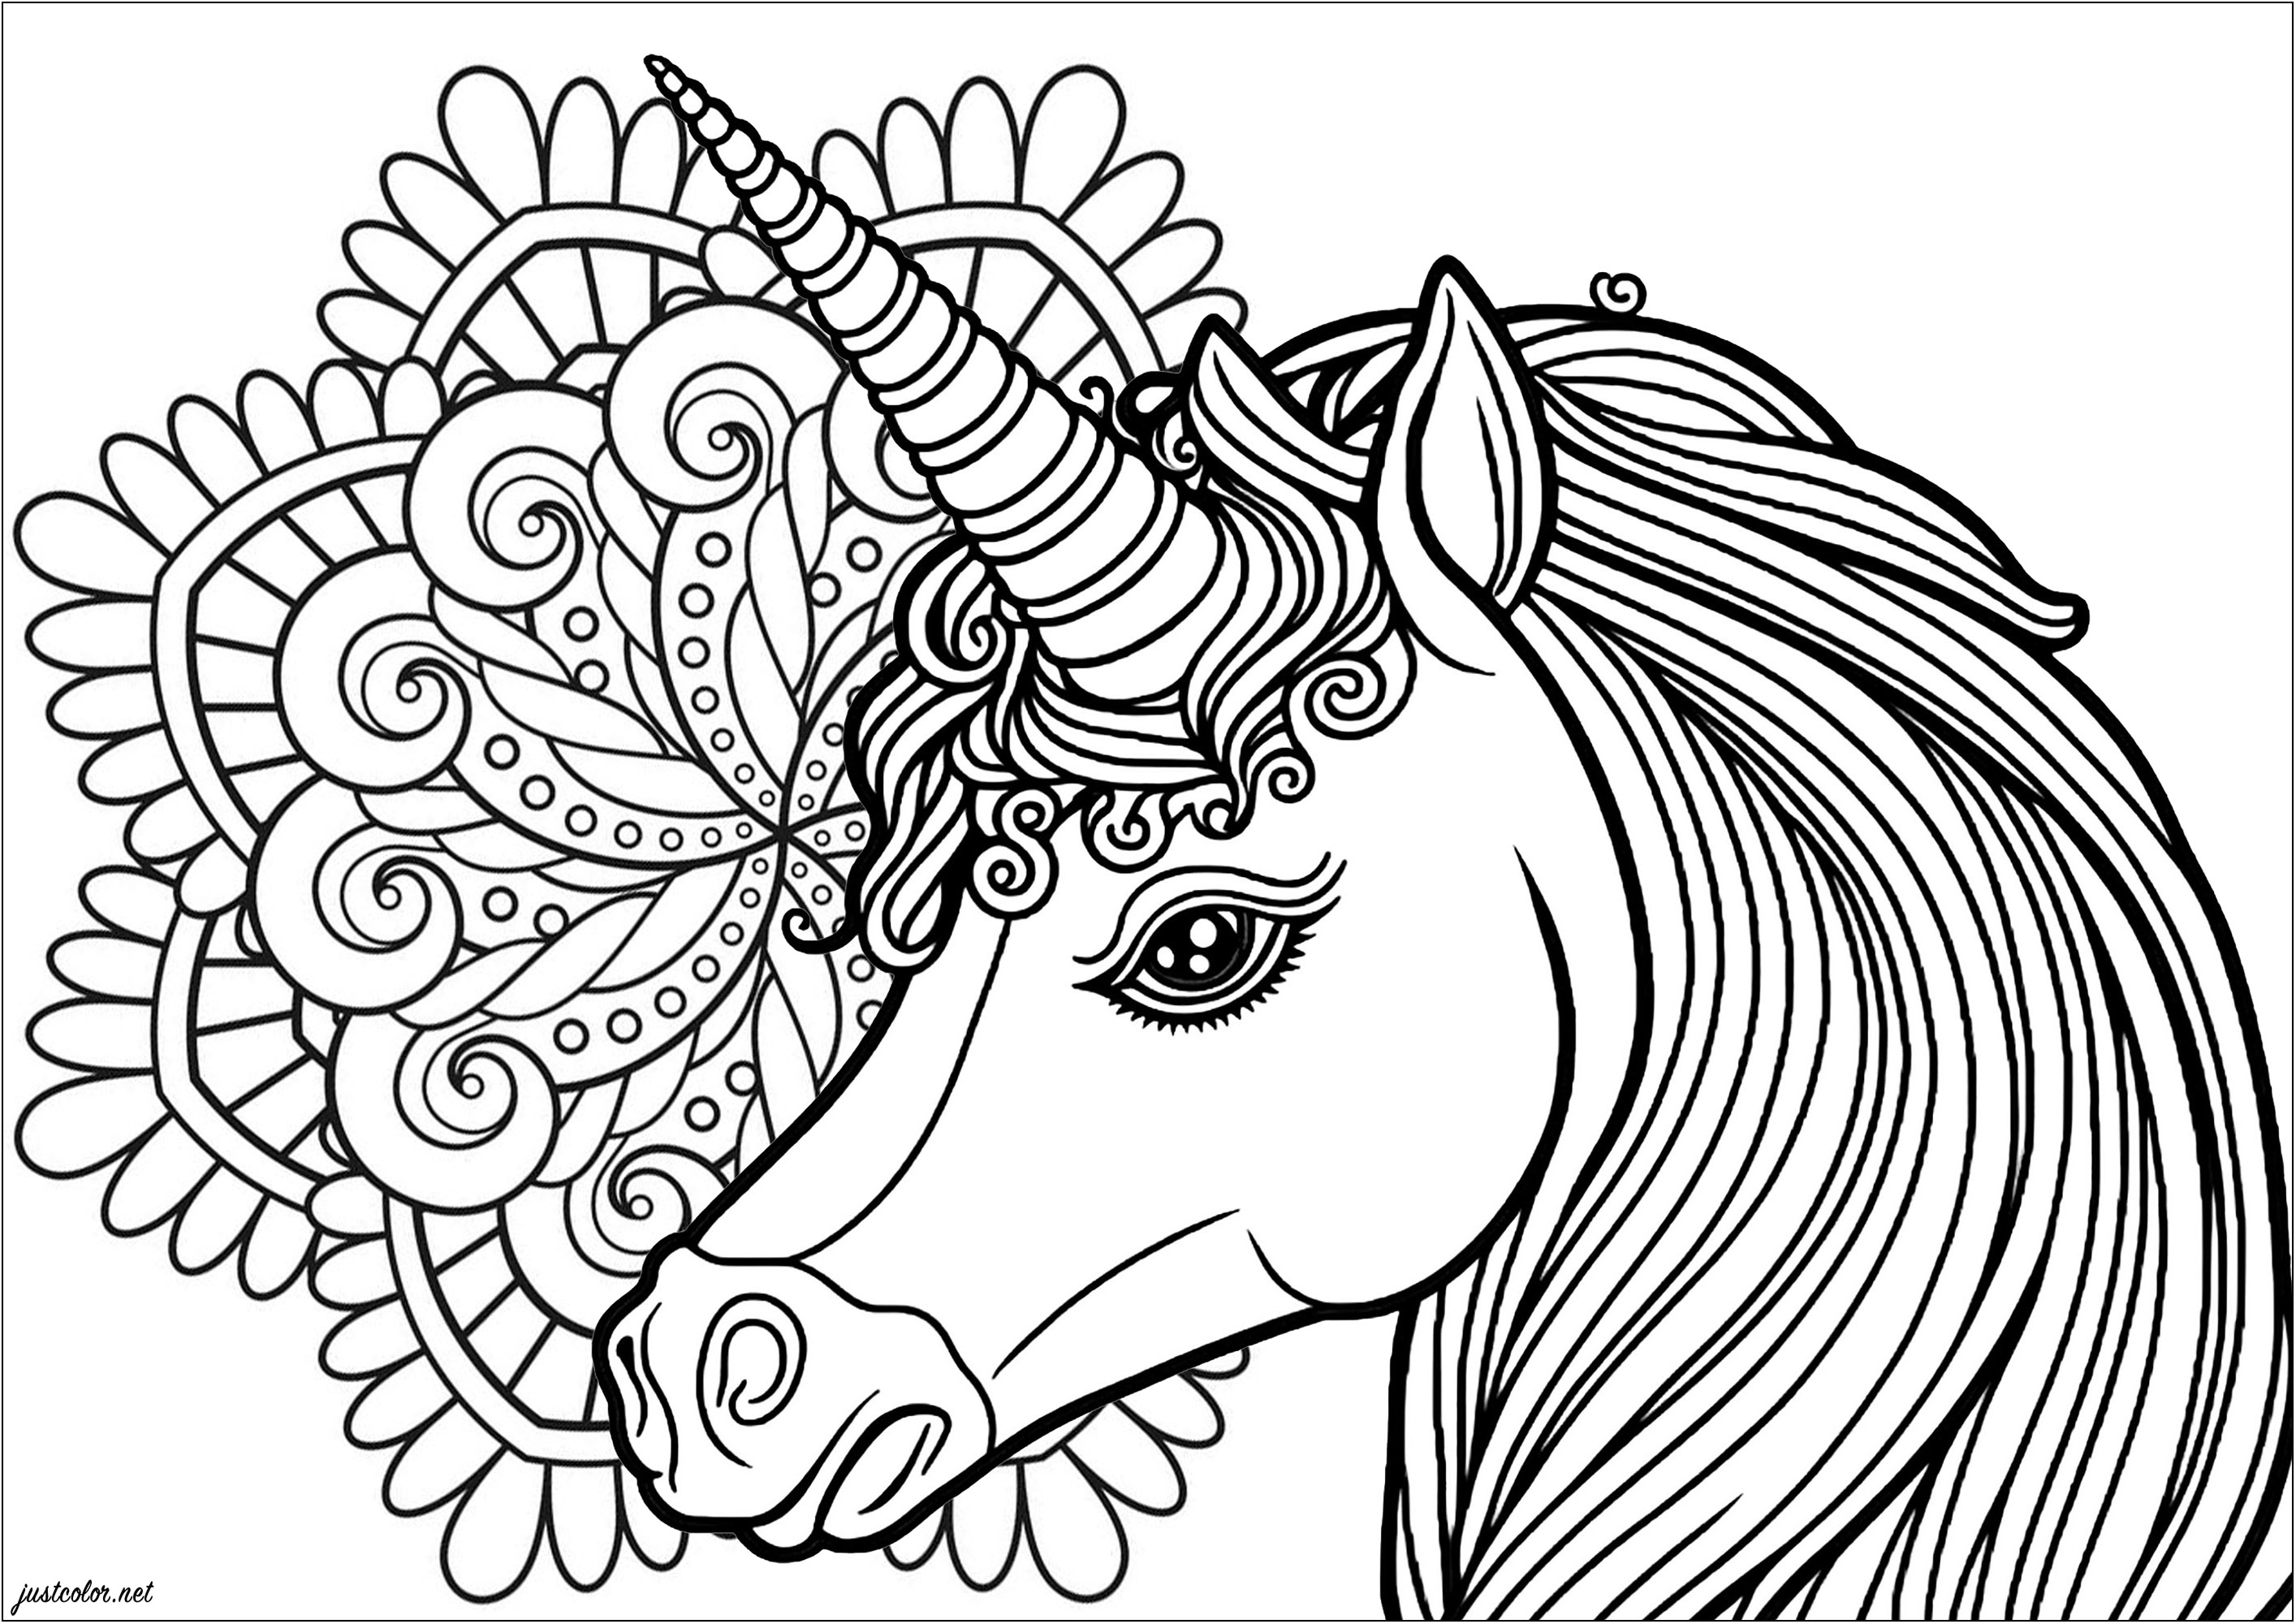 Profil de Licorne avec un joli Mandala en arrière-plan. Transformez chaque passage de votre feutre en un rayon de magie et laissez votre imagination galoper librement, en coloriage cette jolie licorne et ce mandala inspirant.